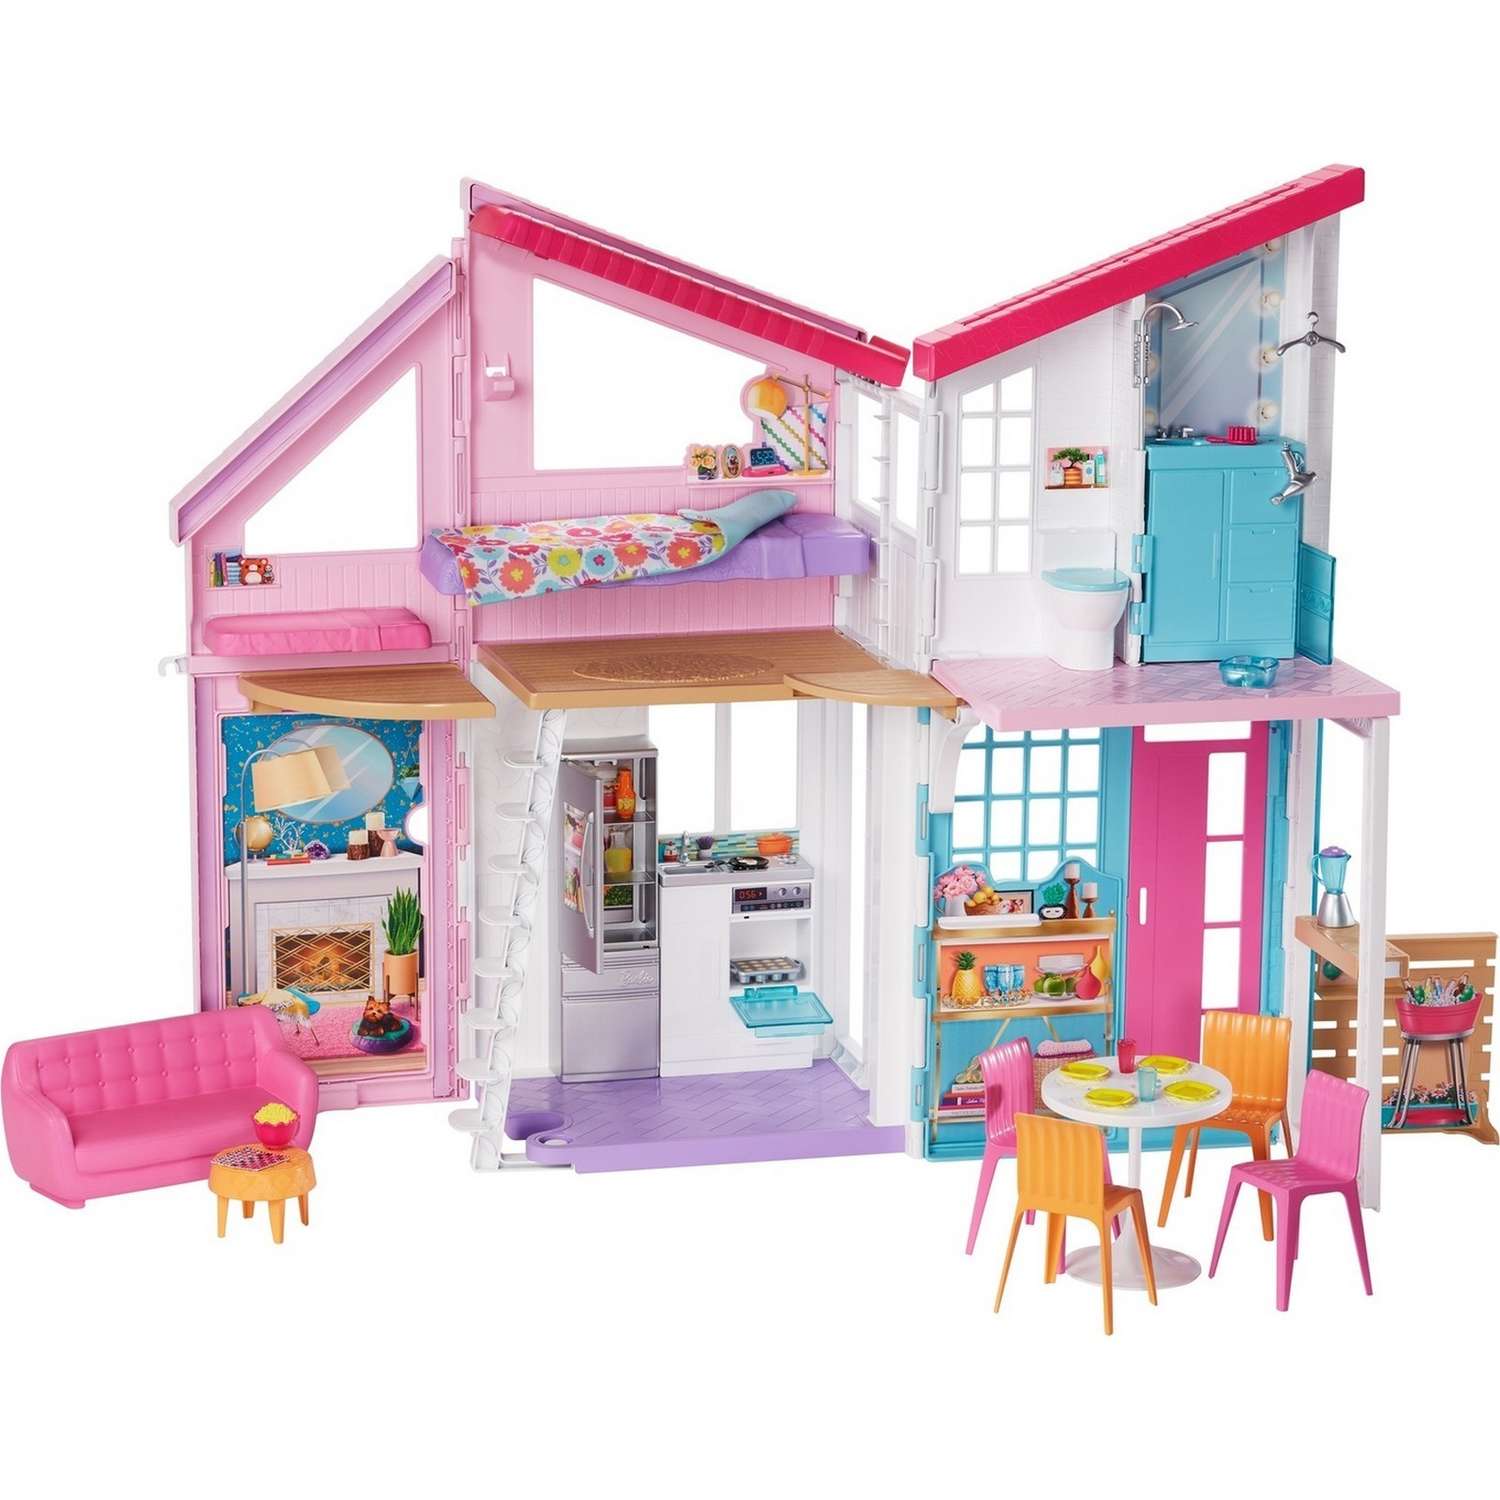 Кукольные домики Чайд: Какие отличия для Барби и Лол?